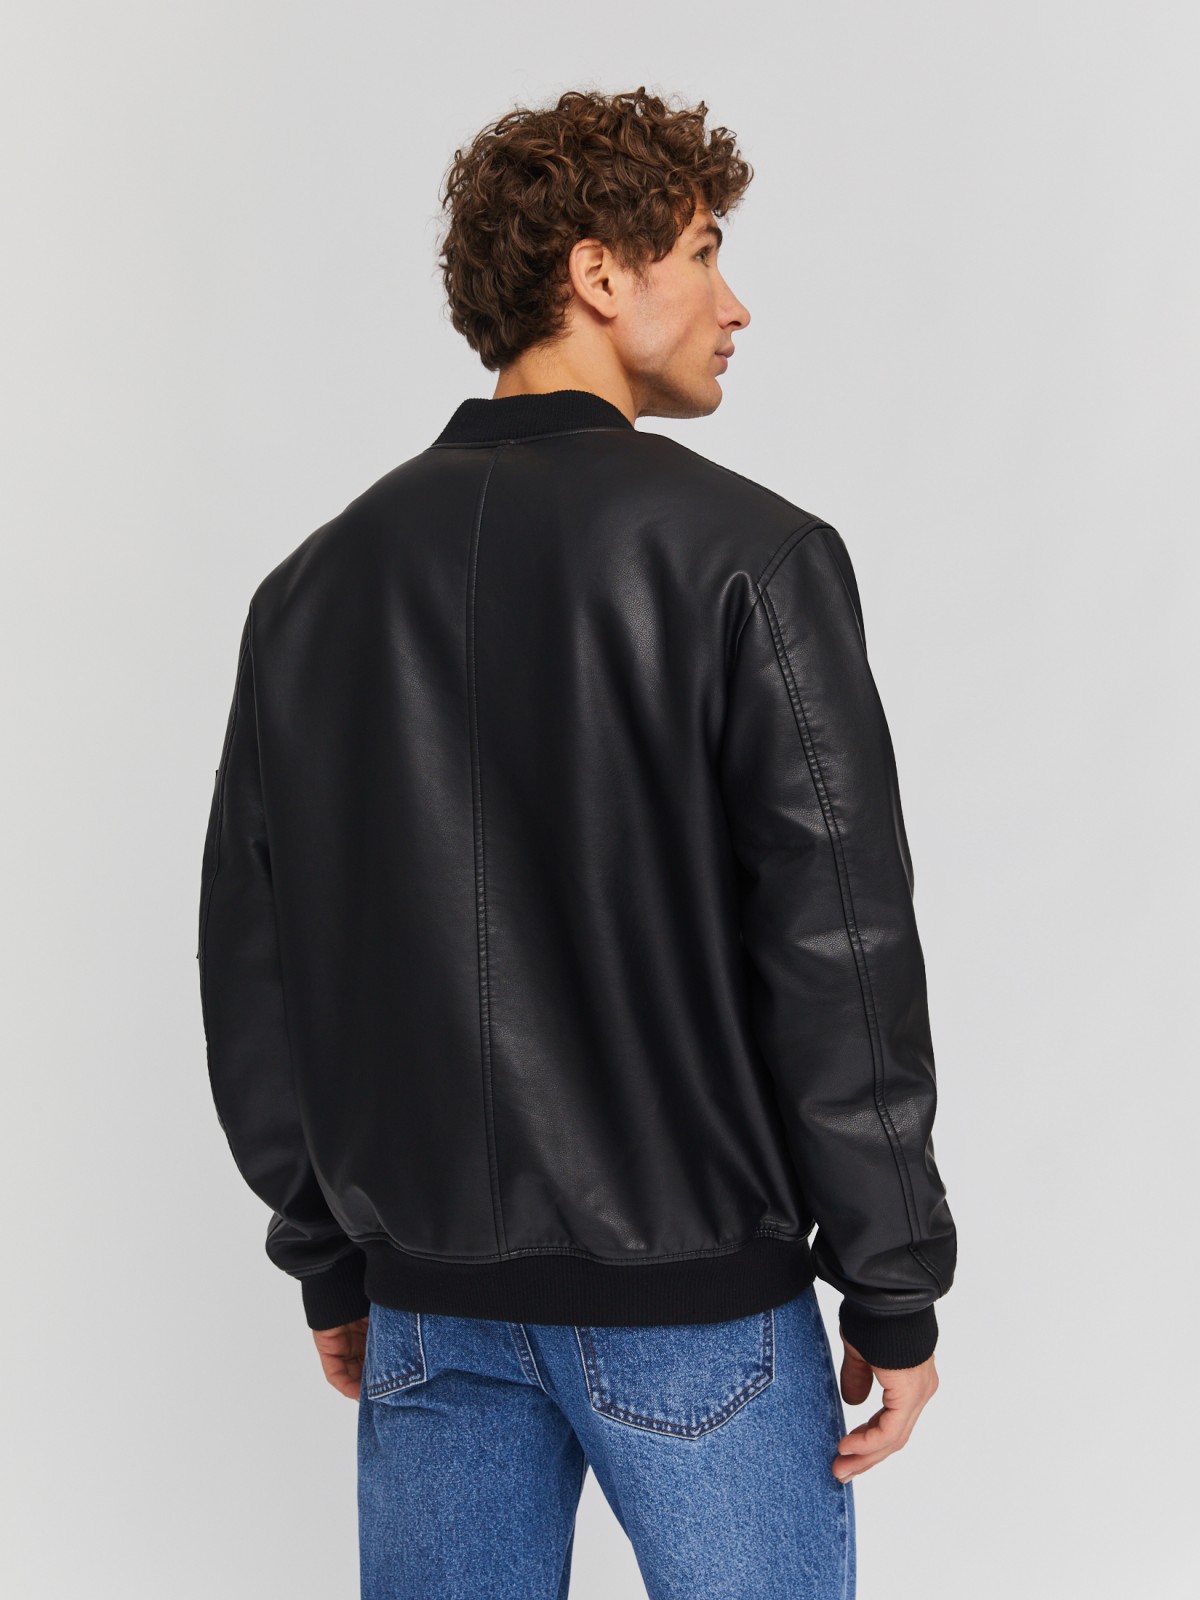 Утеплённая куртка-бомбер из экокожи на синтепоне zolla 014135150134, цвет черный, размер M - фото 5